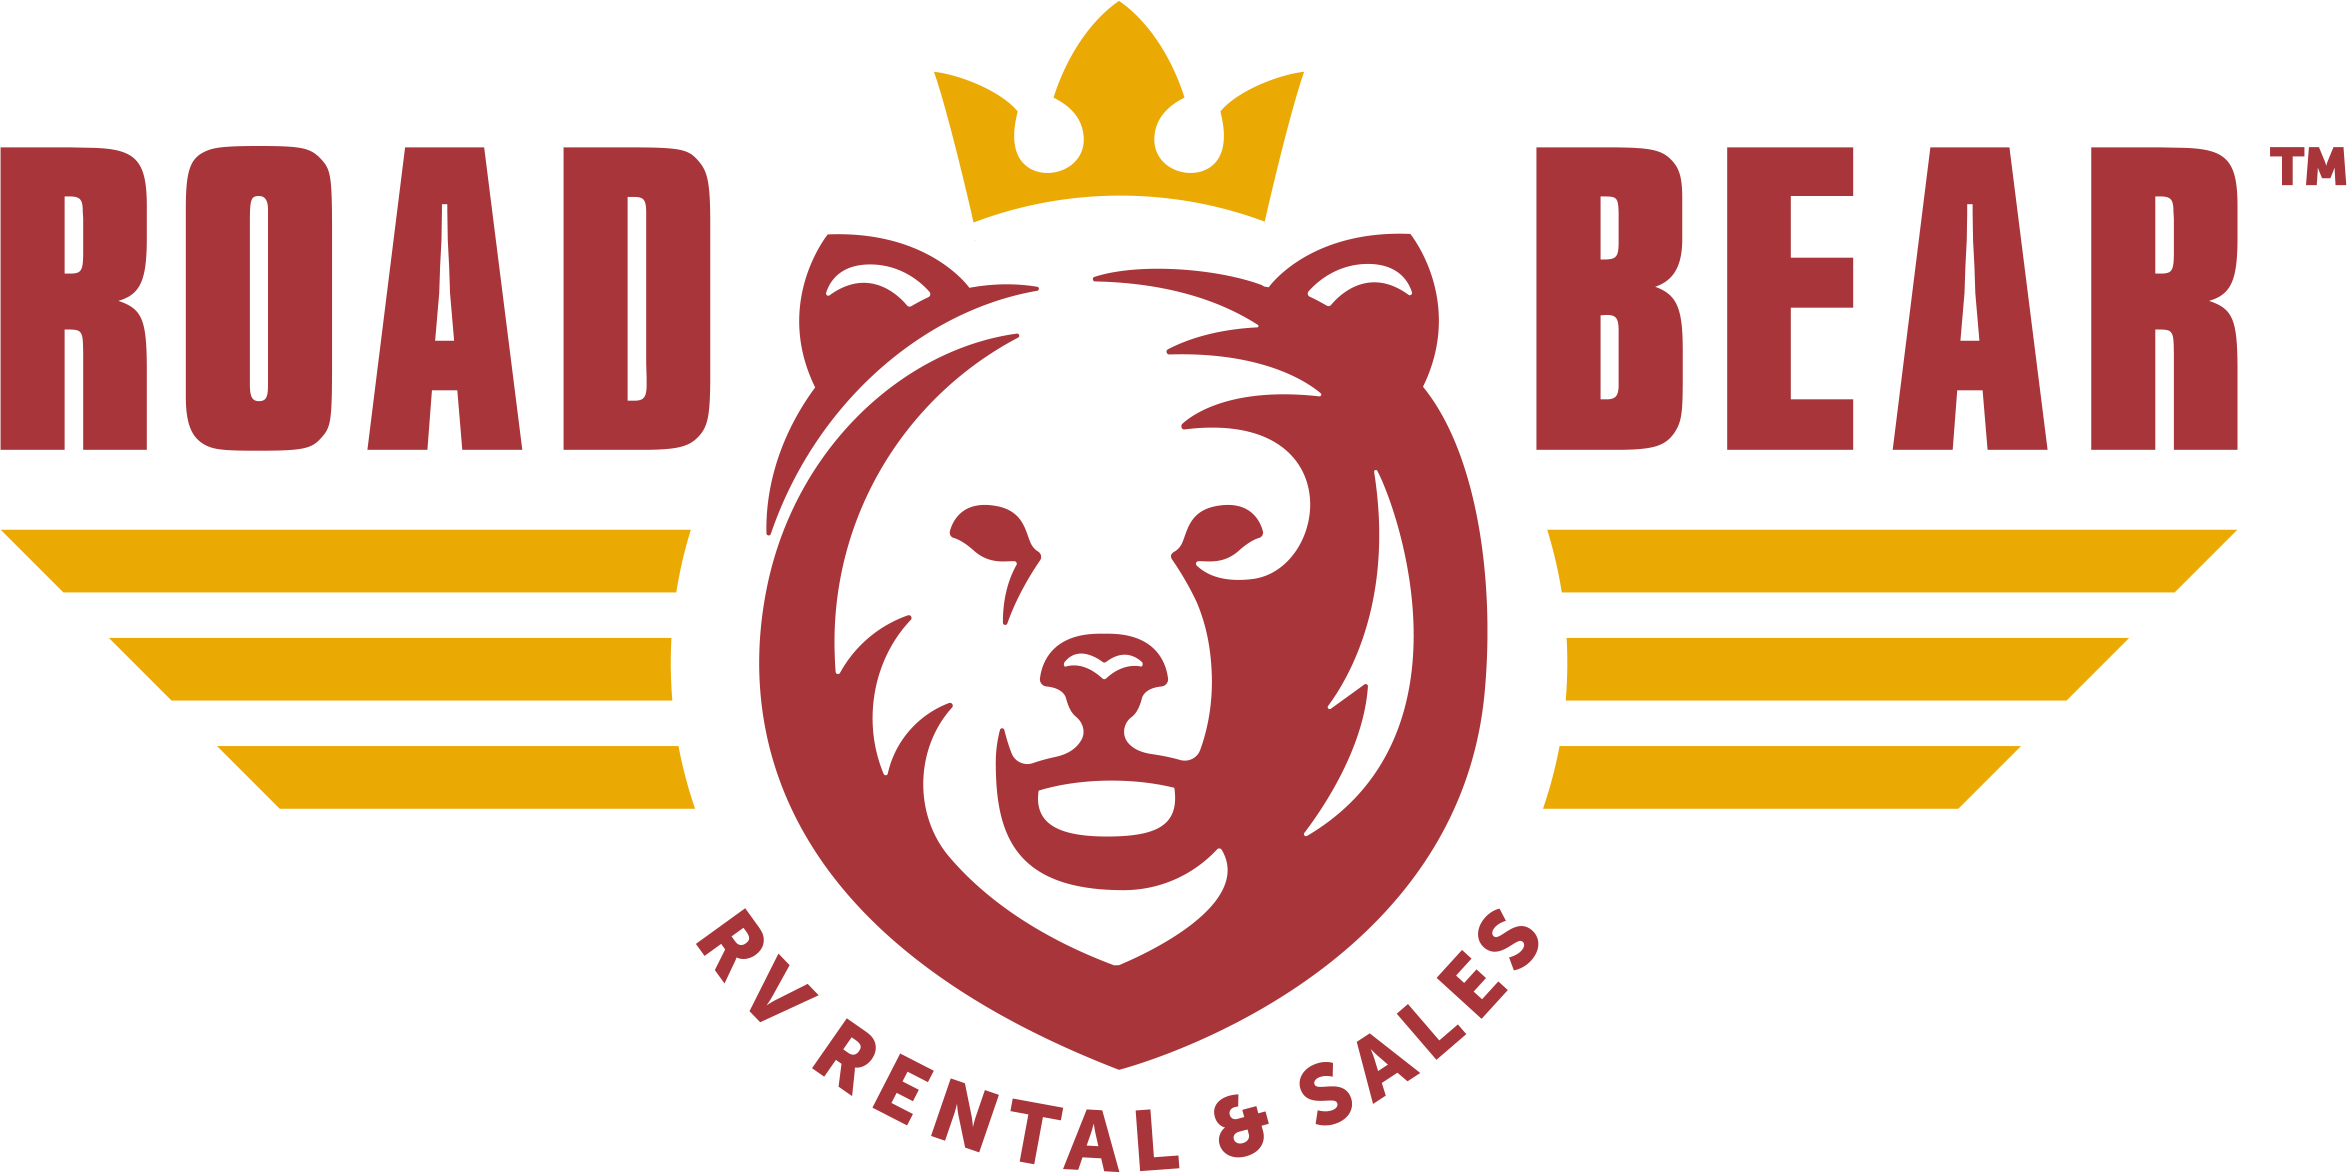 Road Bear Logo